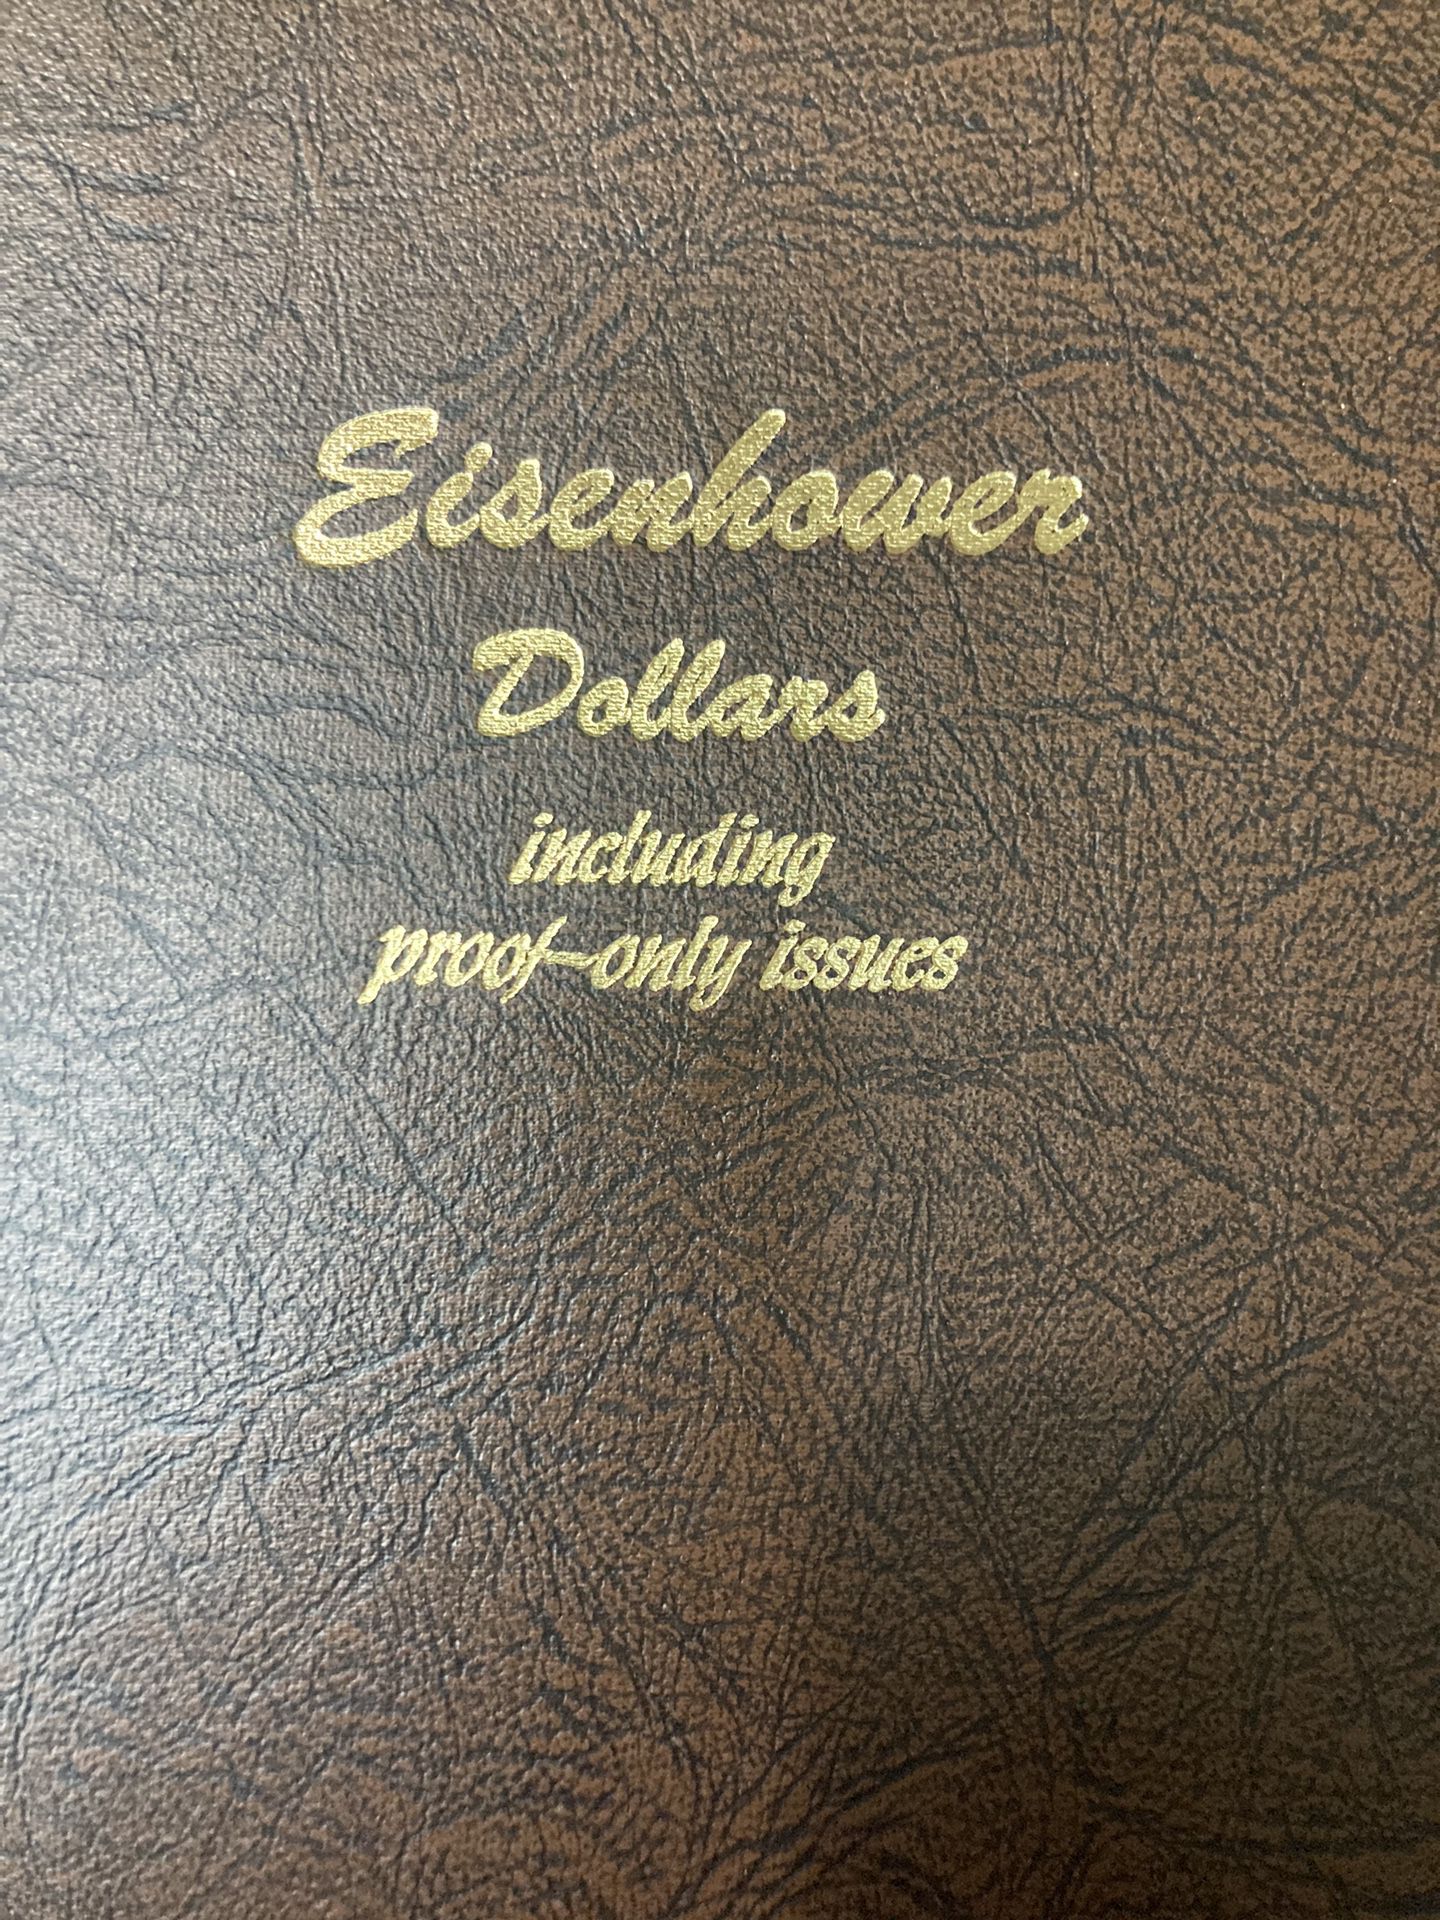 Eisenhower Dollar Set